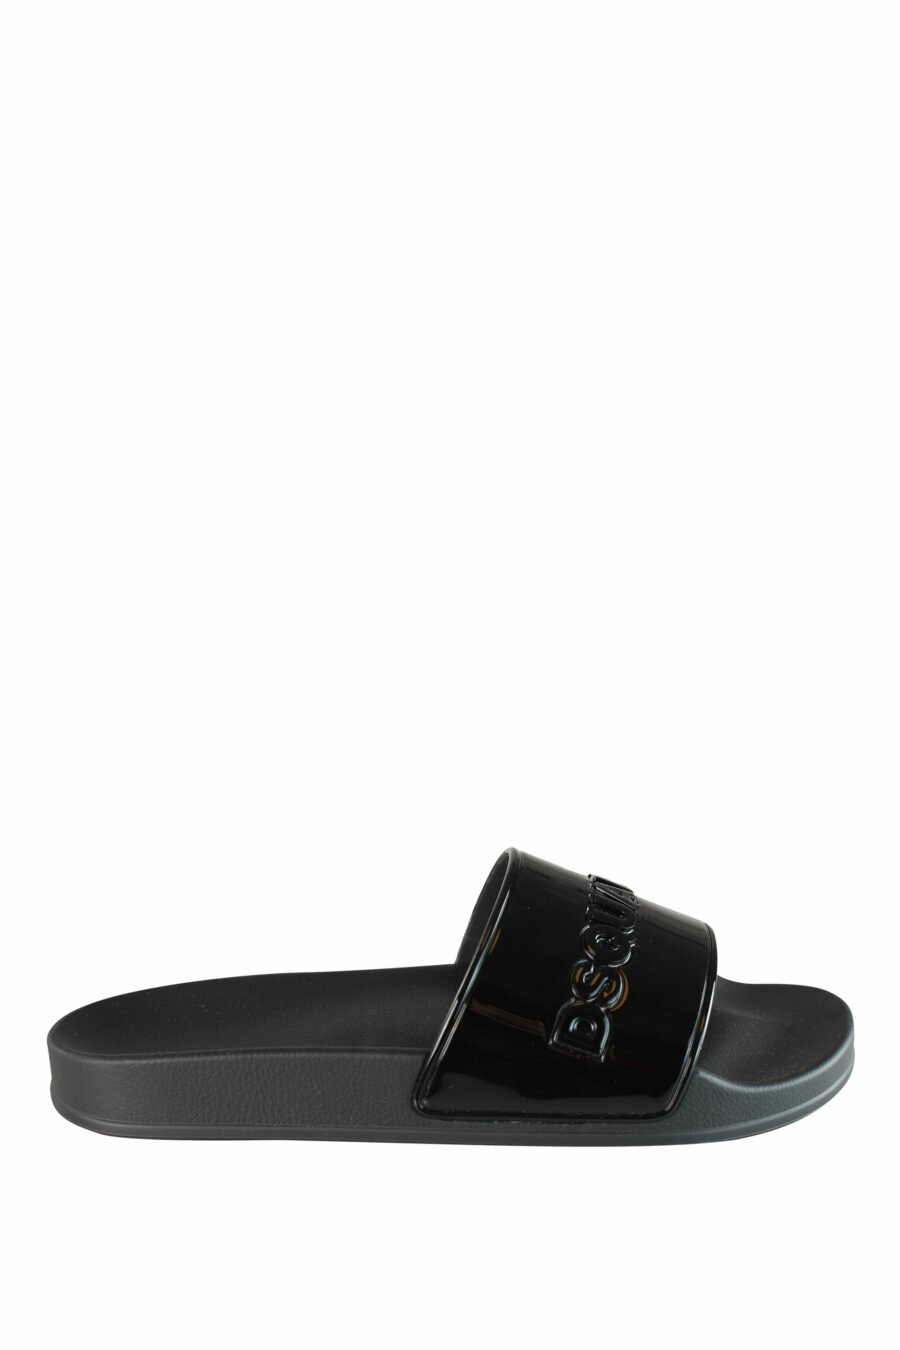 Glänzende schwarze Flip Flops mit schwarzem Maxilogo - IMG 1335